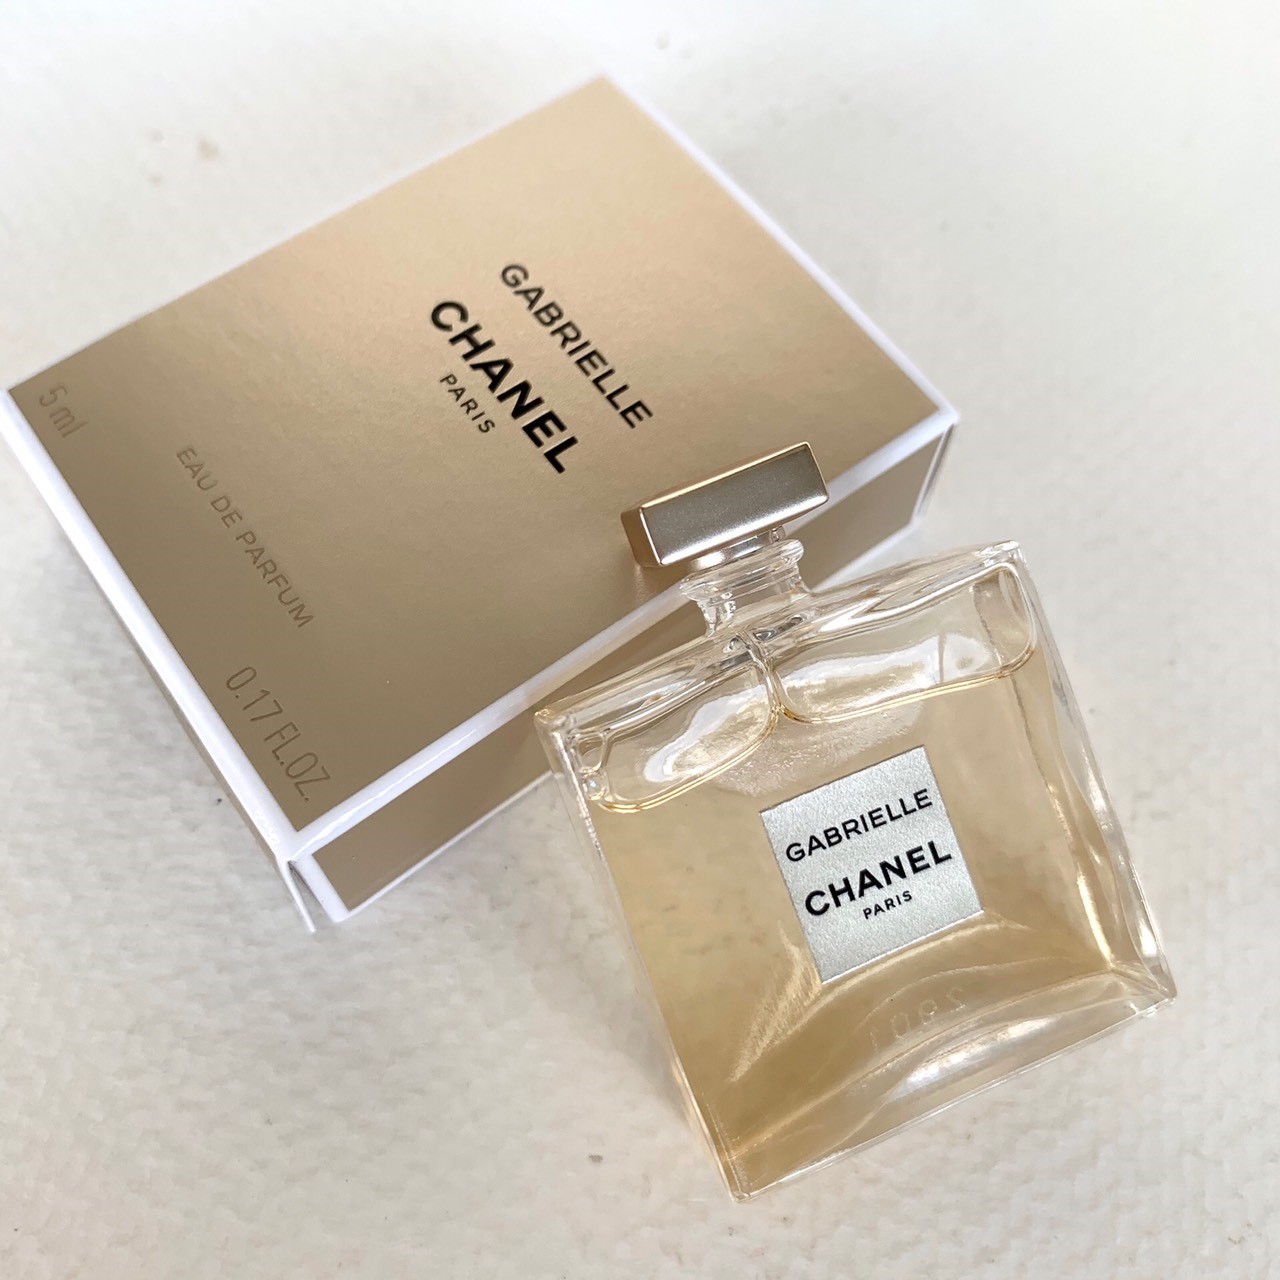 Chanel Gabrielle mini perfume 5 ml.-Edp 